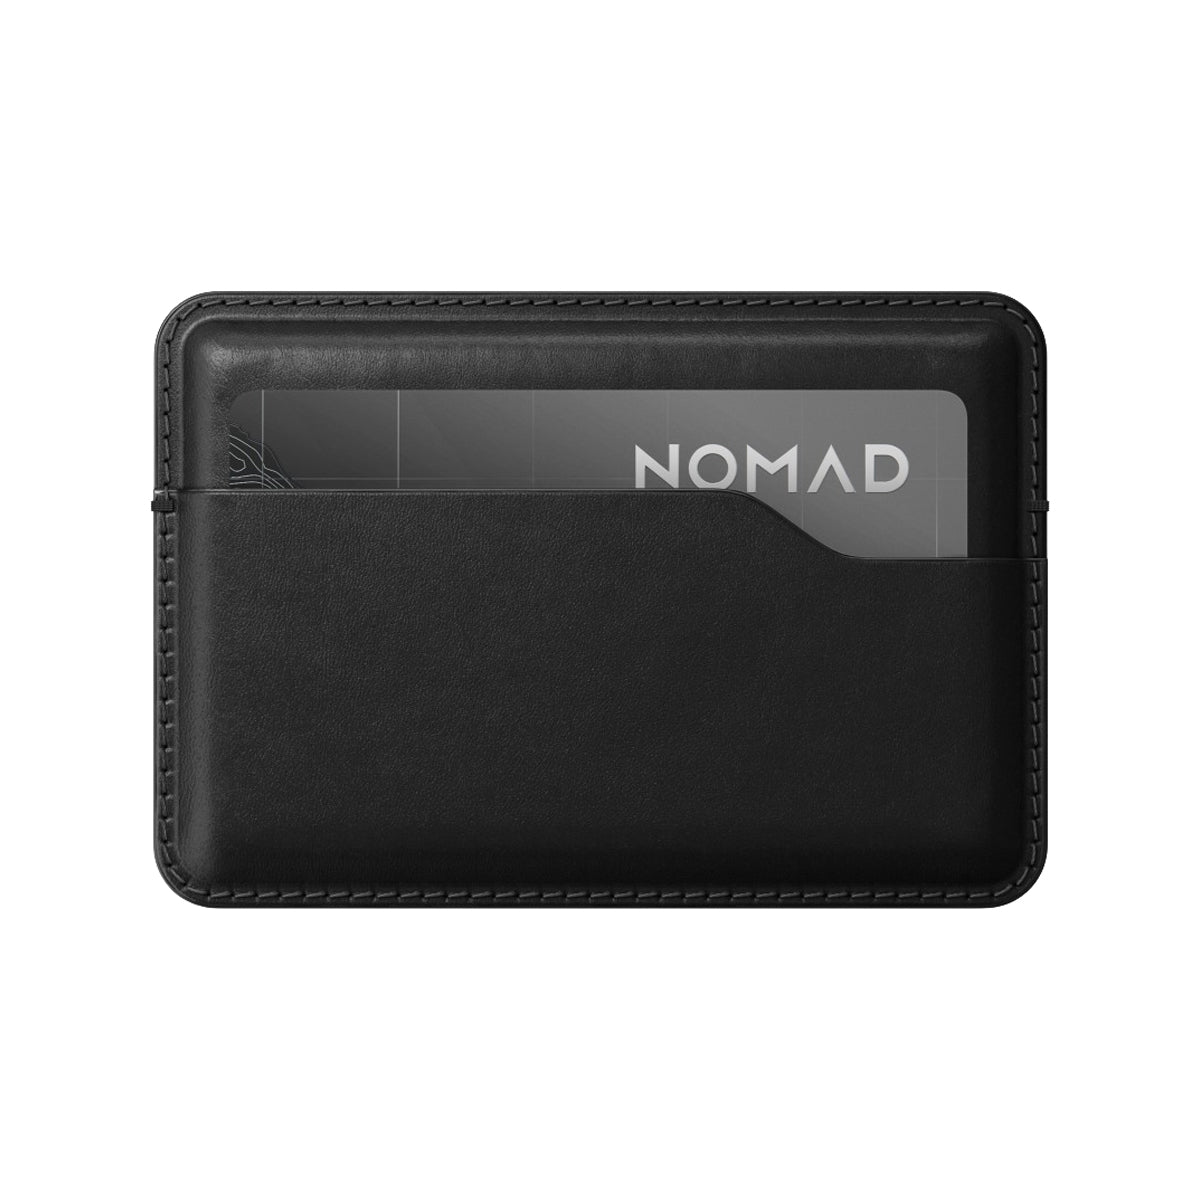 NOMAD Card Wallet - Black Horween Leather.